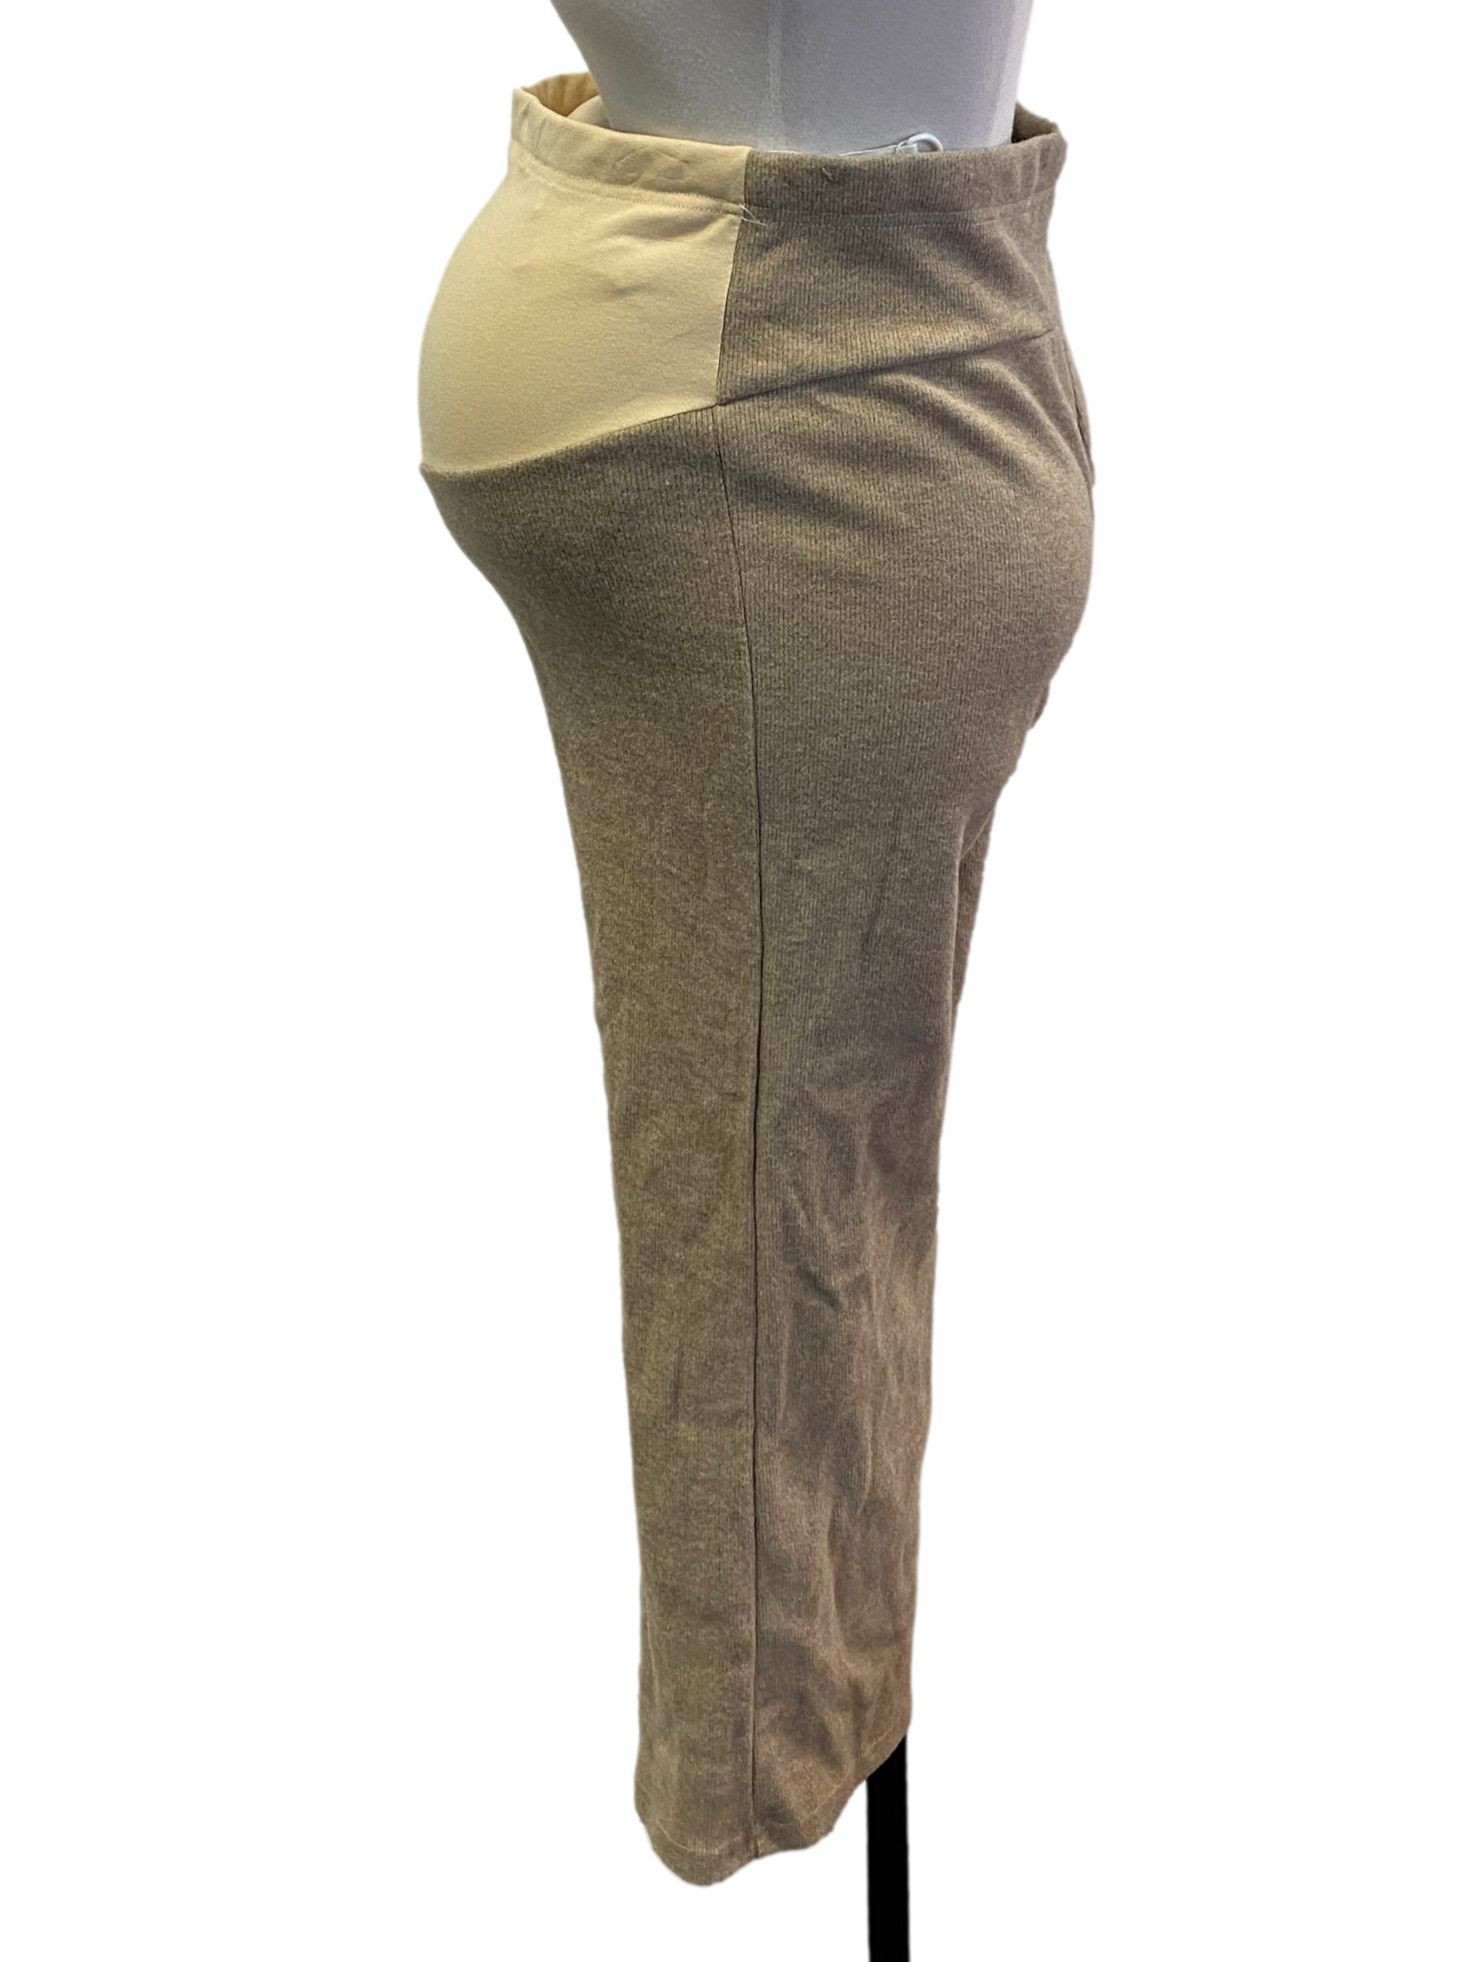 Artichoke Green Slack Pants